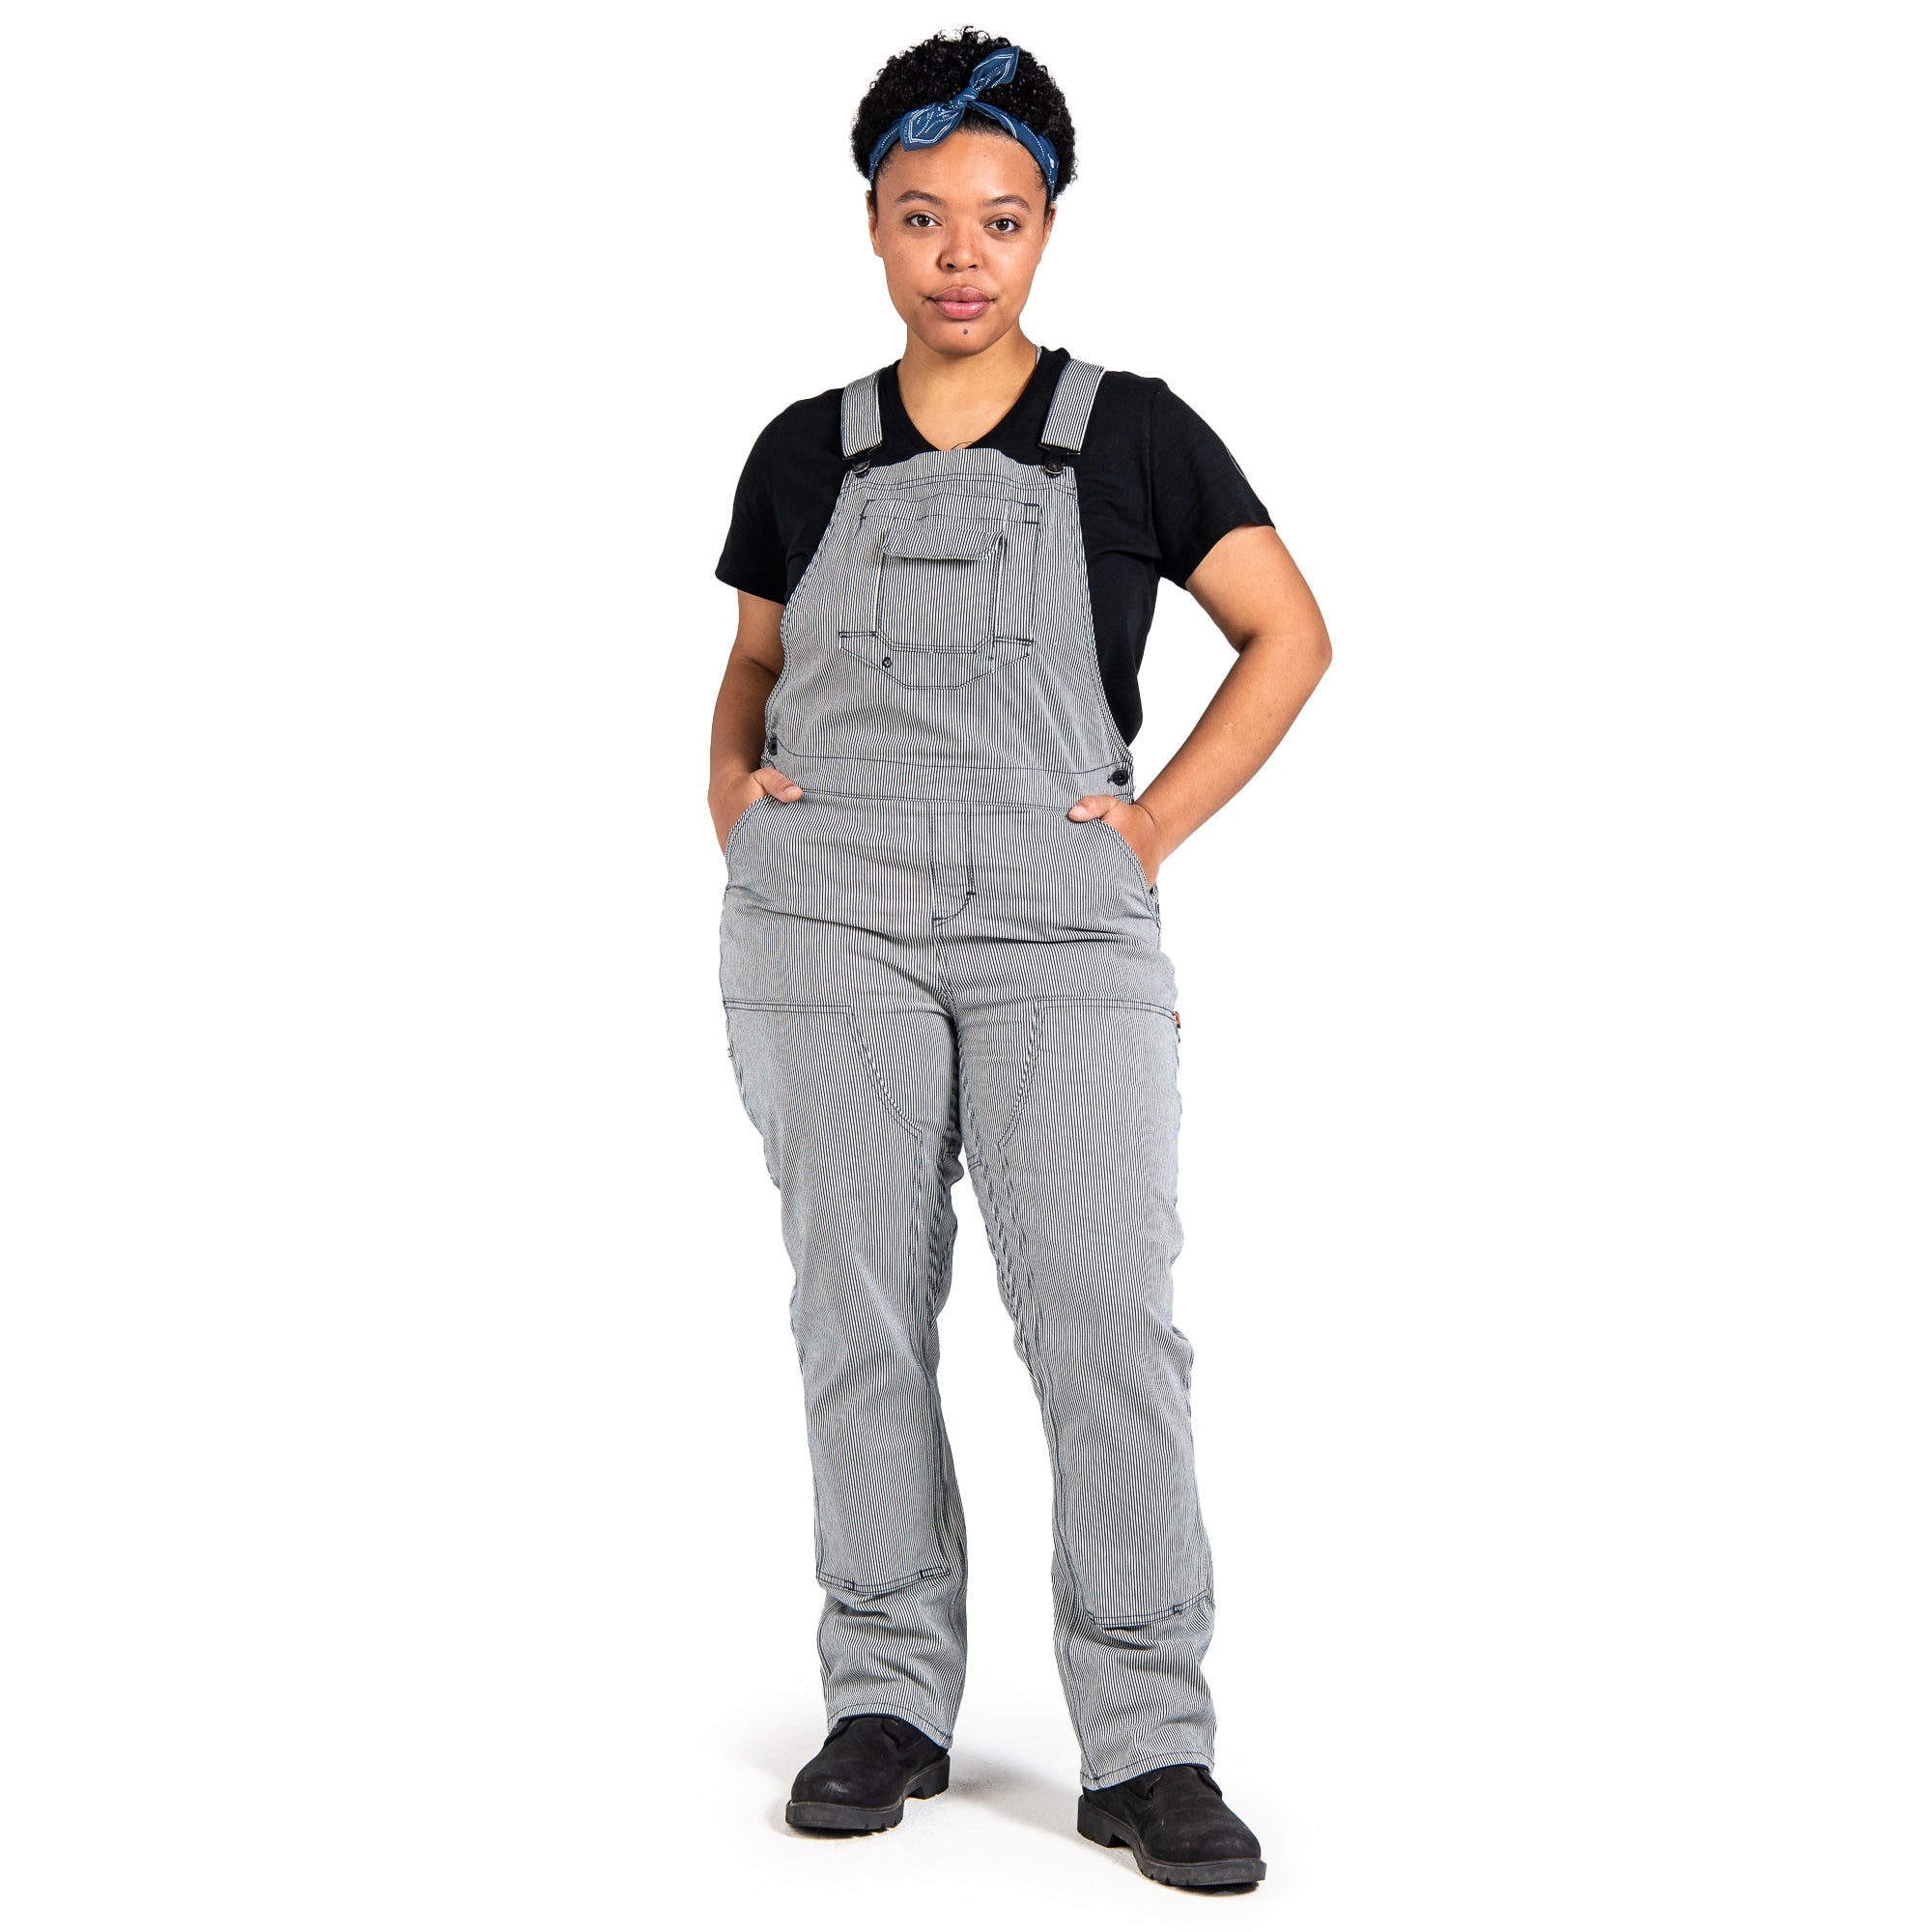 Dovetail Workwear Women's Freshly Overall_Indigo Stripe - Work World - Workwear, Work Boots, Safety Gear